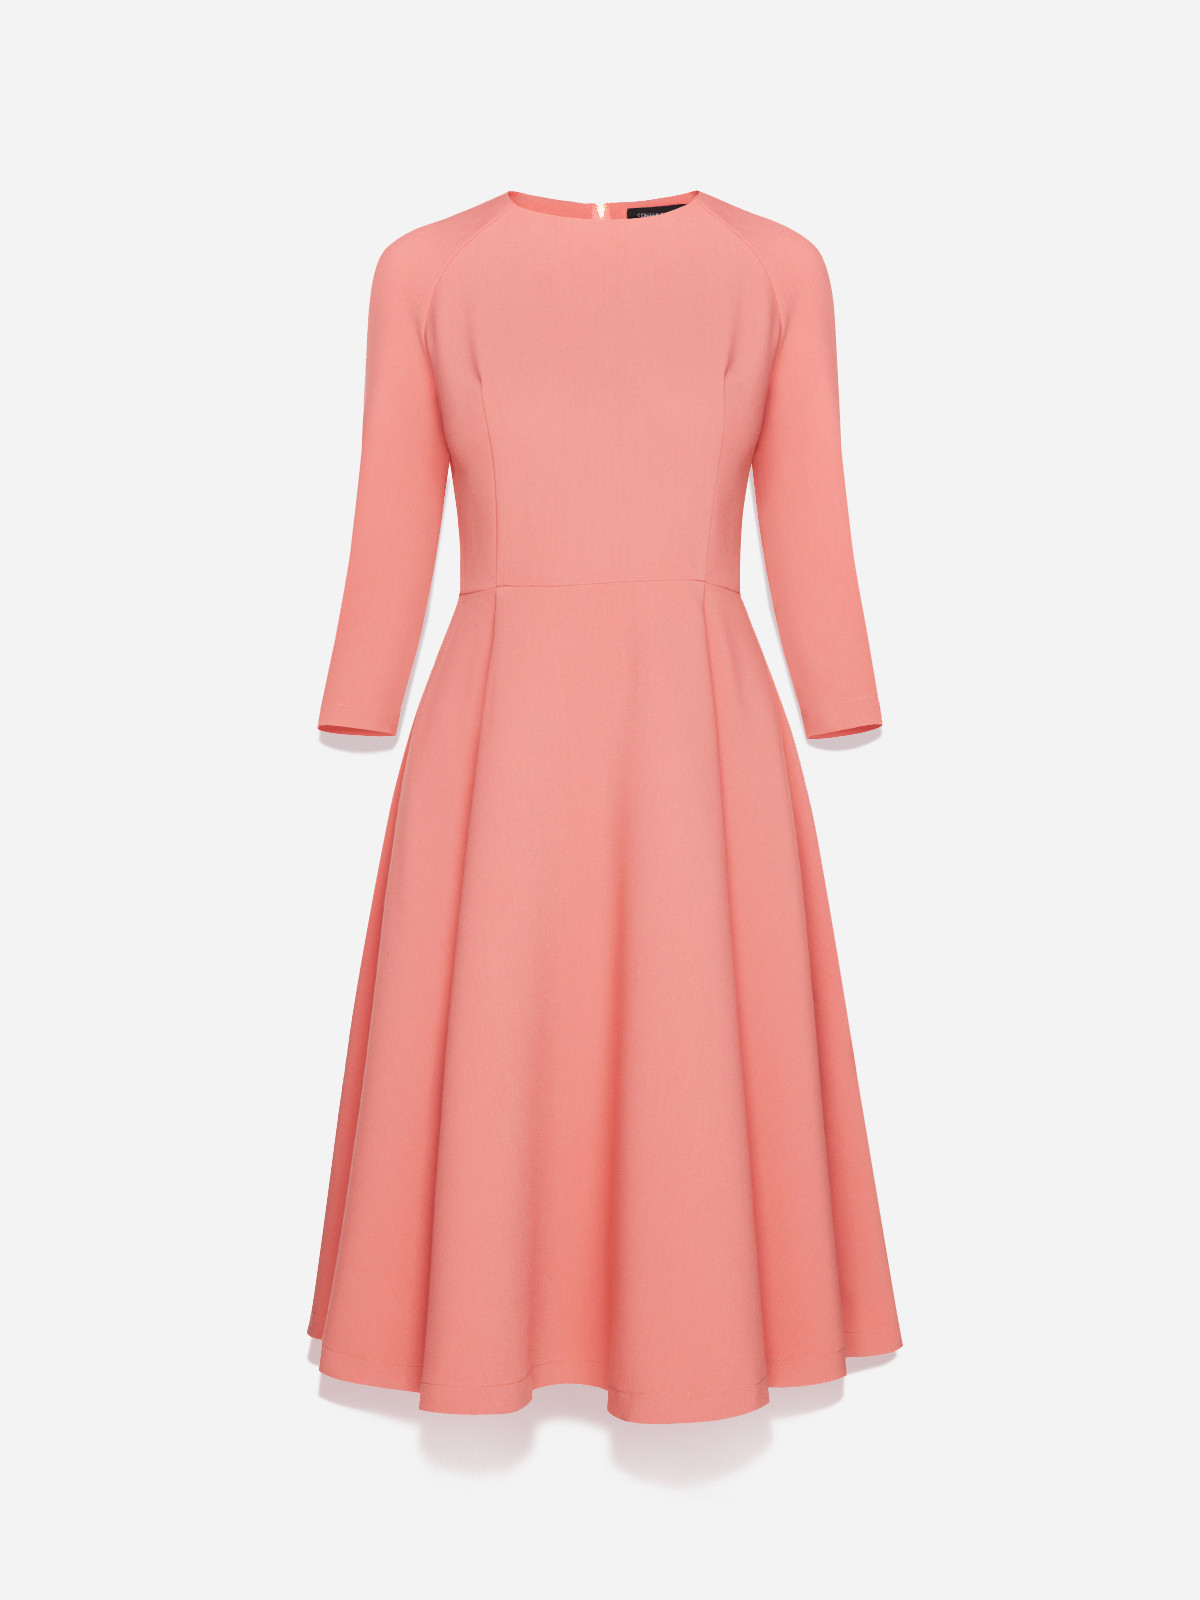 Розовое платье с длинным рукавом